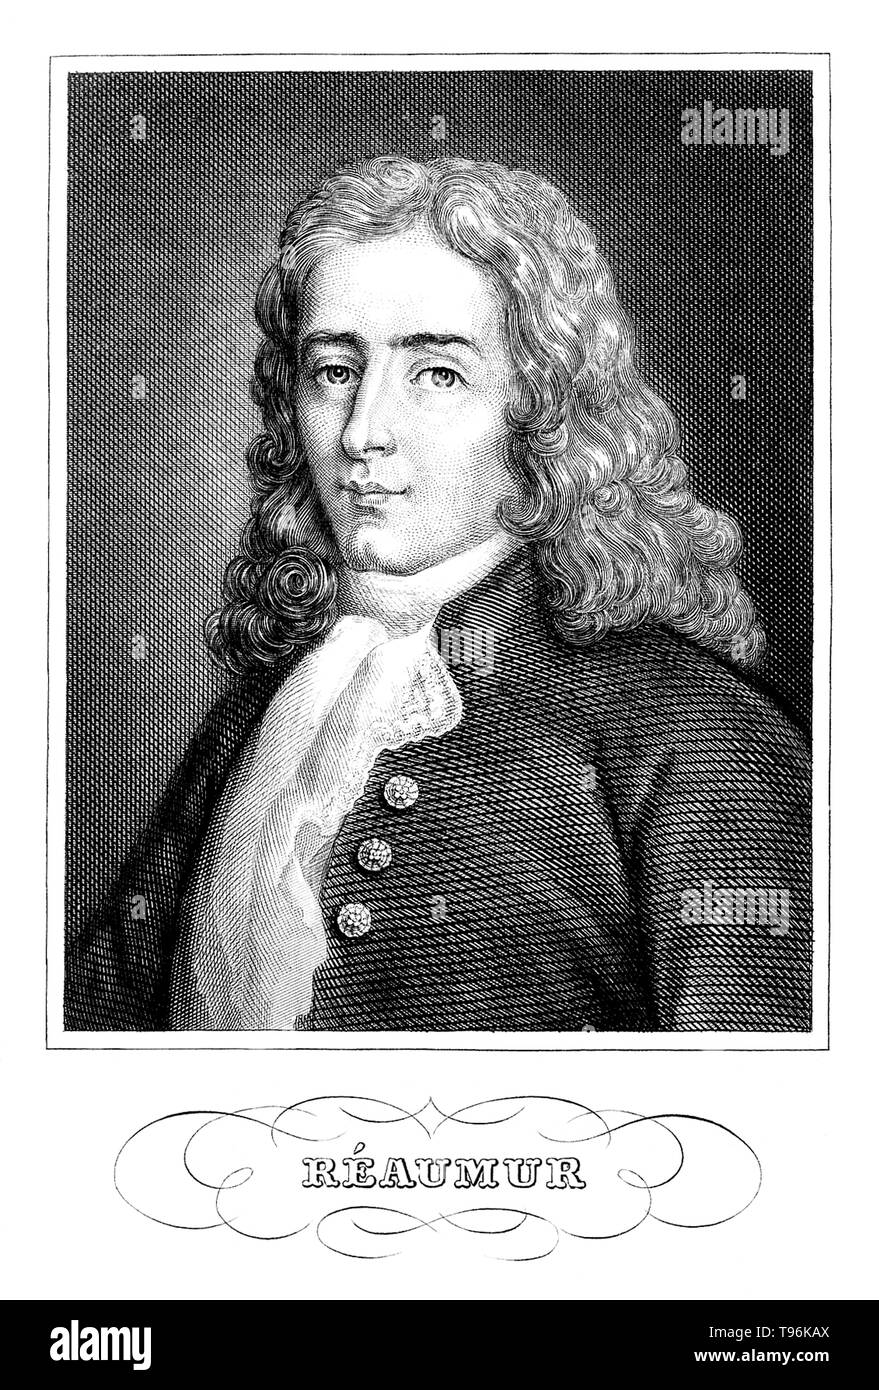 René Antoine Ferchault de Réaumur (Februar 28, 1683 - Oktober 17, 1757) war ein französischer Wissenschaftler, der in vielen verschiedenen Bereichen, insbesondere der Untersuchung von Insekten beigetragen. Im Jahre 1699 studierte er Bürgerliches Recht und Mathematik. Im Jahre 1703 ging er nach Paris, wo er das Studium der Mathematik und Physik fort, und im Jahre 1708 gewählt wurde, im Alter von 24 Jahren, ein Mitglied der Académie des Sciences. Im Jahre 1731 wurde er in der Meteorologie interessiert, und erfand das Thermometer Waage, die seinen Namen trägt: Die réaumur. Stockfoto